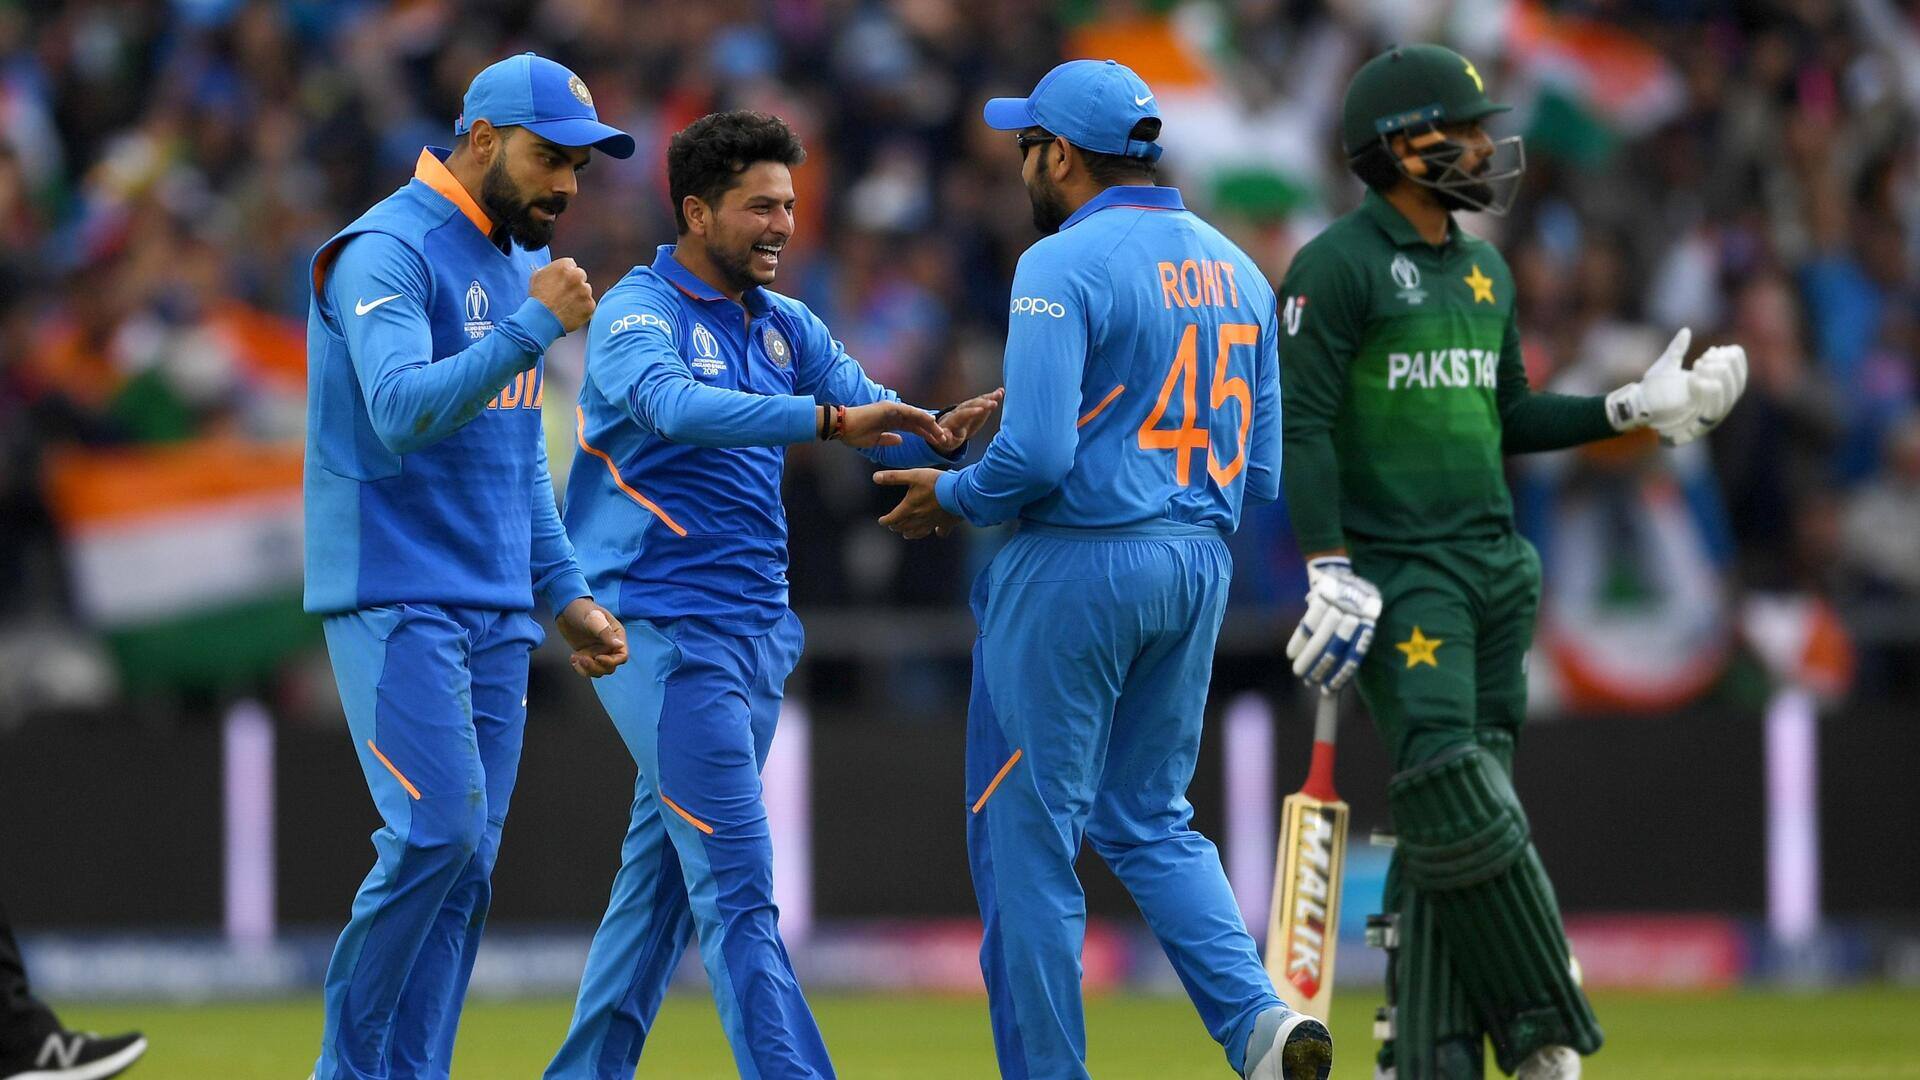 वनडे विश्व कप 2023: पाकिस्तान क्रिकेट टीम के साथ कोई विशेष व्यवहार नहीं होगा- विदेश मंत्रालय 